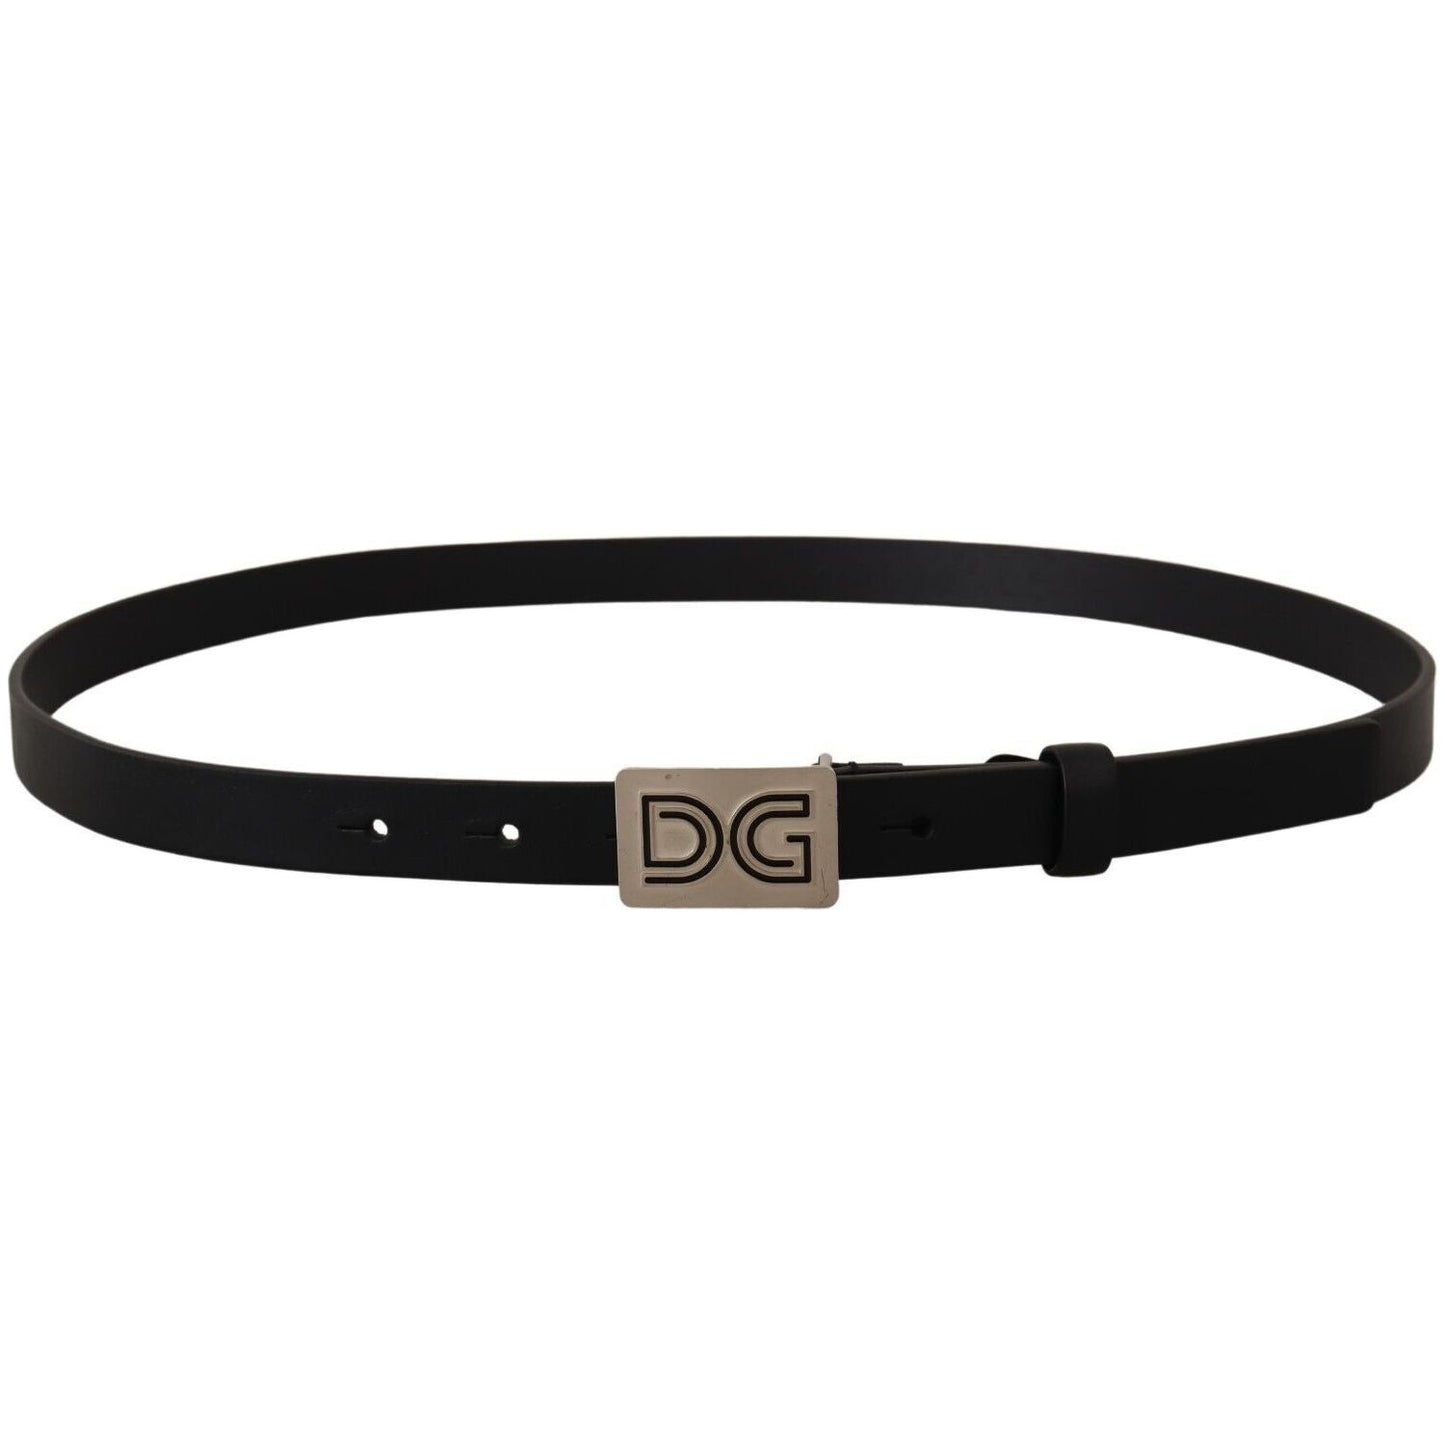 Dolce & Gabbana Elegant Black Leather Belt with Silver Buckle black-leather-silver-dg-logo-buckle-belt